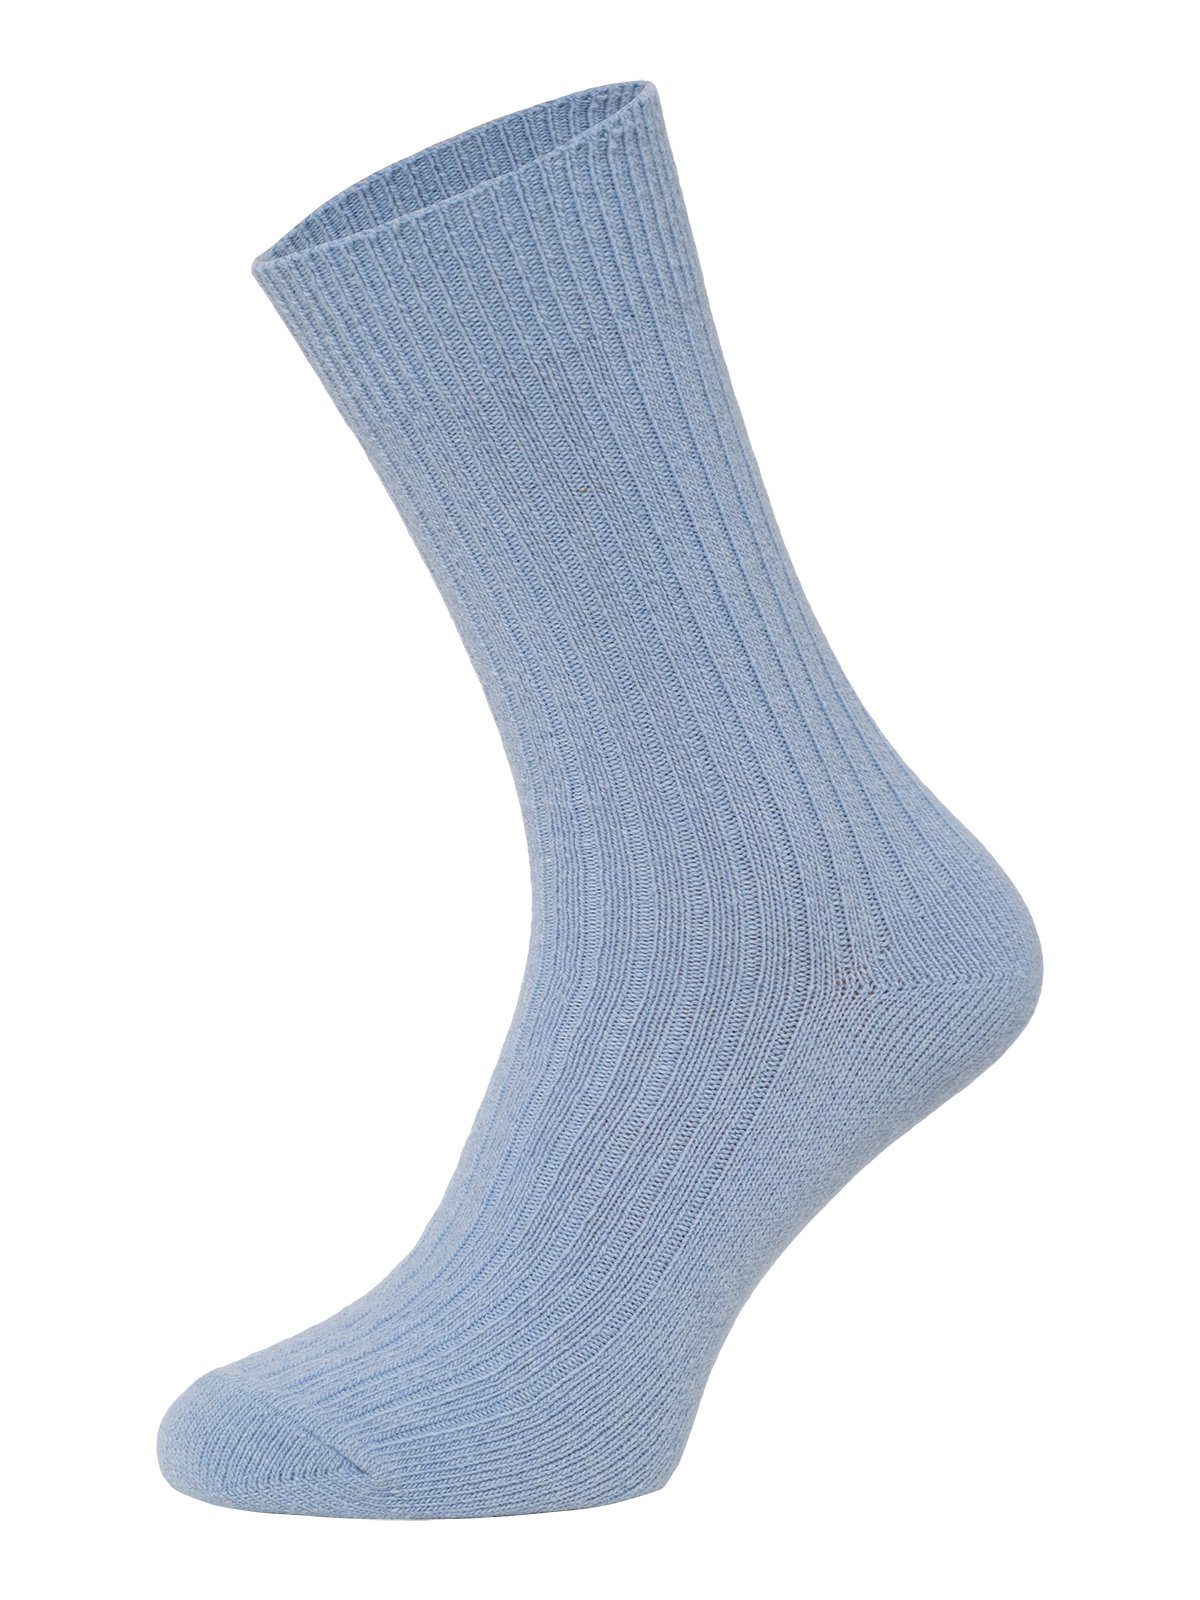 72% HomeOfSocks Uni mit Dünn Socken Wollanteil Hellblau Wollsocken Wollsocken Druckarm Bunt Hochwertige Dünne Bunte